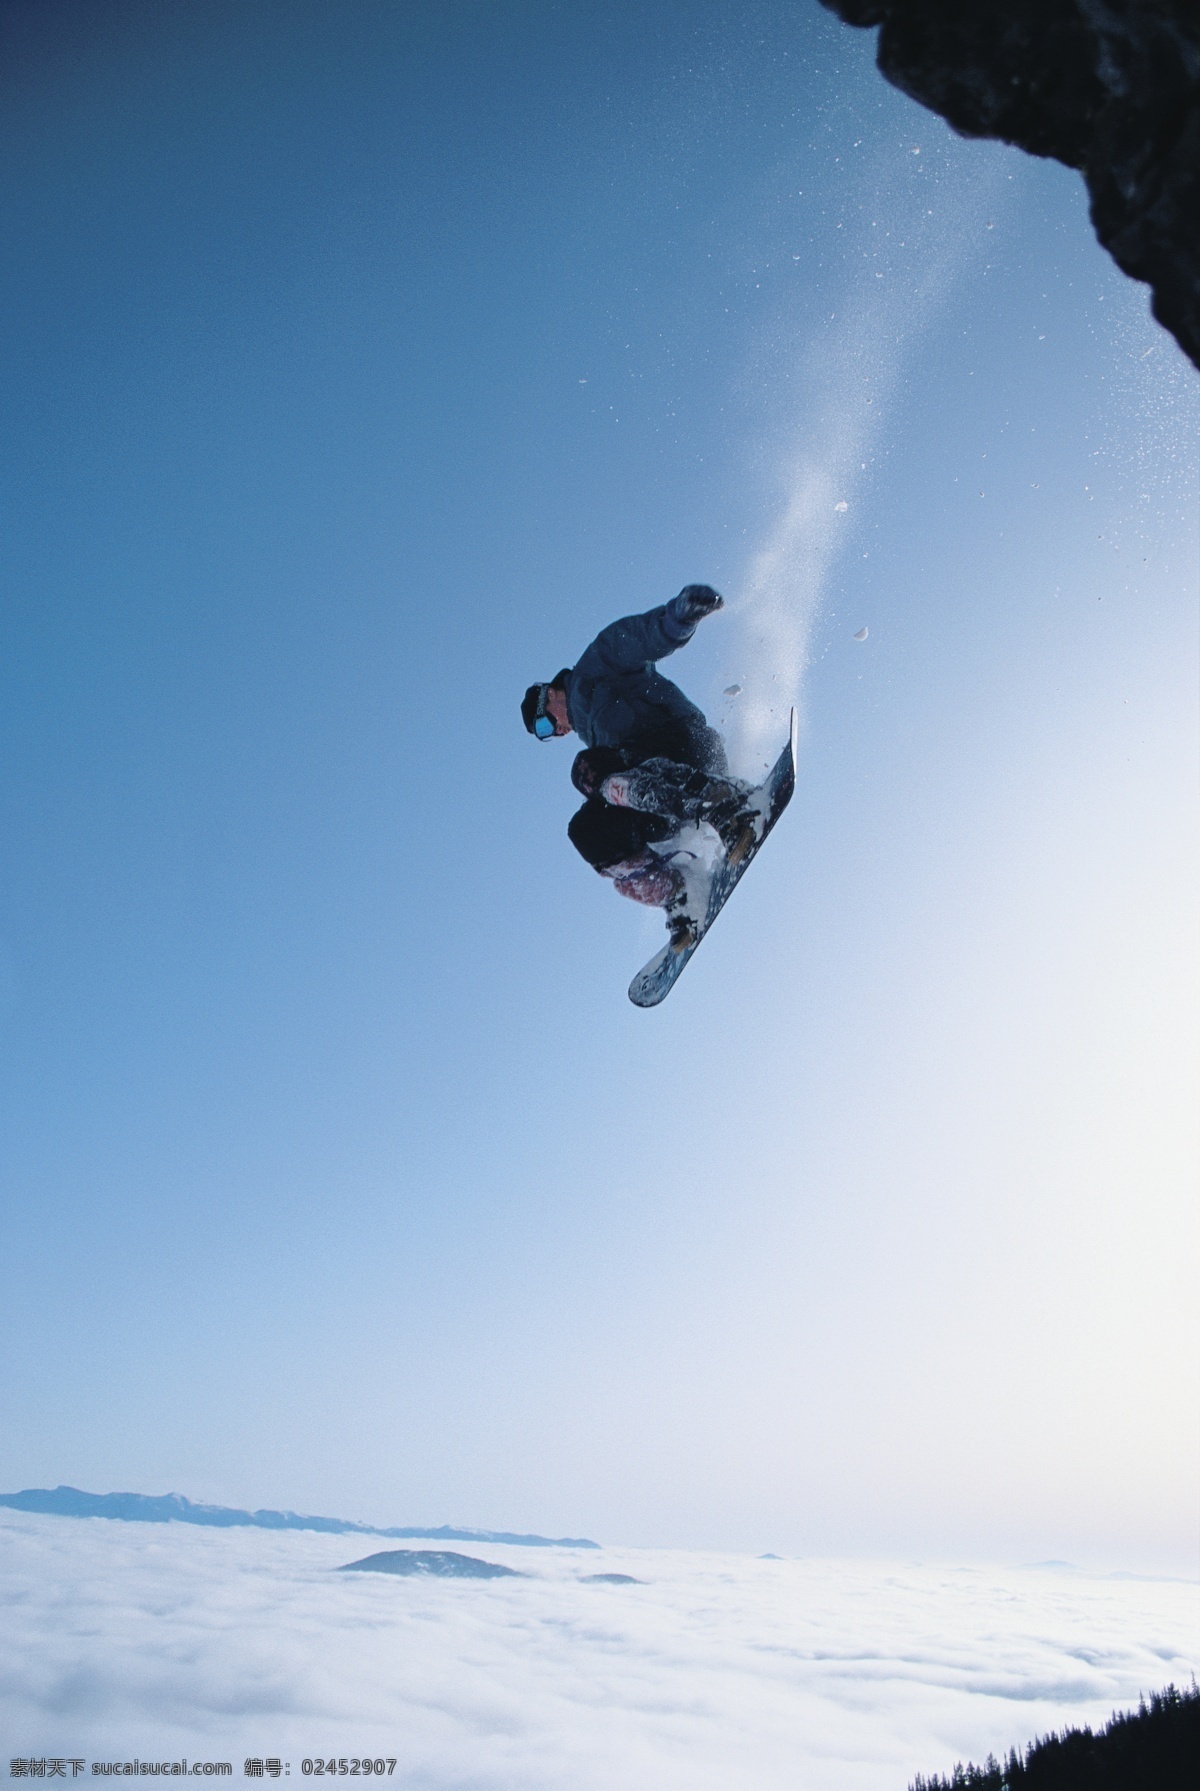 极限 雪上 滑板 运动 摄影图片 雪地运动 划雪运动 极限运动 体育项目 运动员 飞跃 腾空 下滑 速度 运动图片 生活百科 雪山 风景 高清图片 体育运动